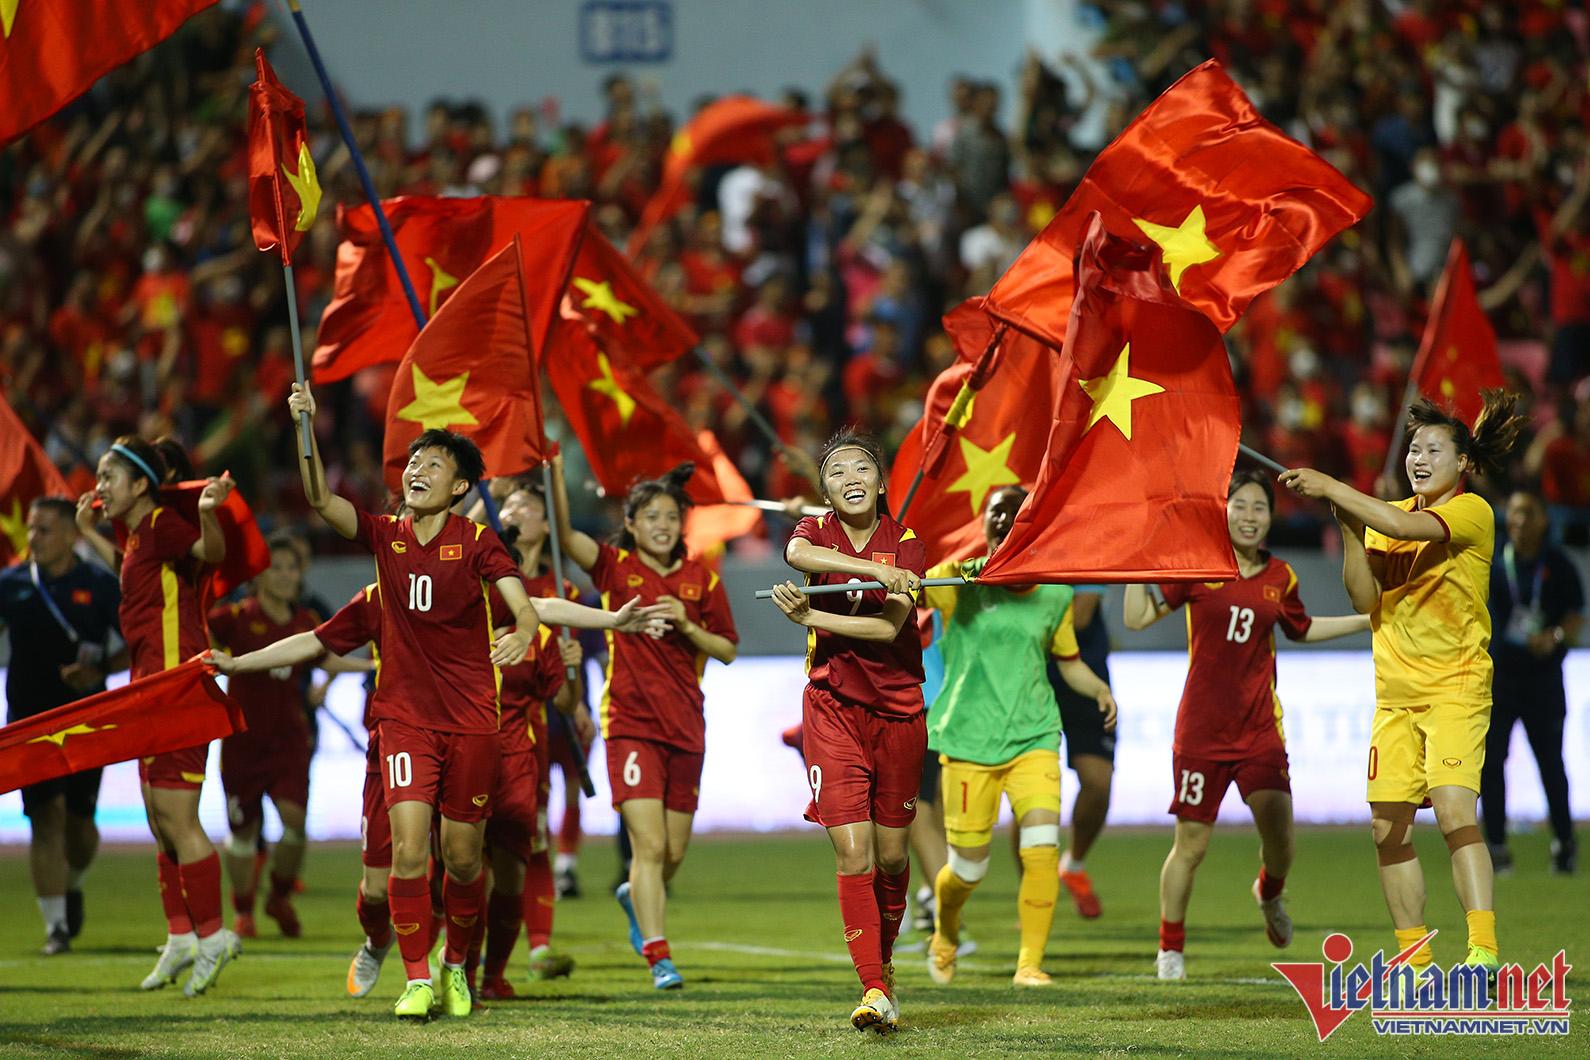 Xúc động hình ảnh cầu thủ nữ Việt Nam cắm cờ Tổ quốc trên bục nhận huy chương - Ảnh 5.